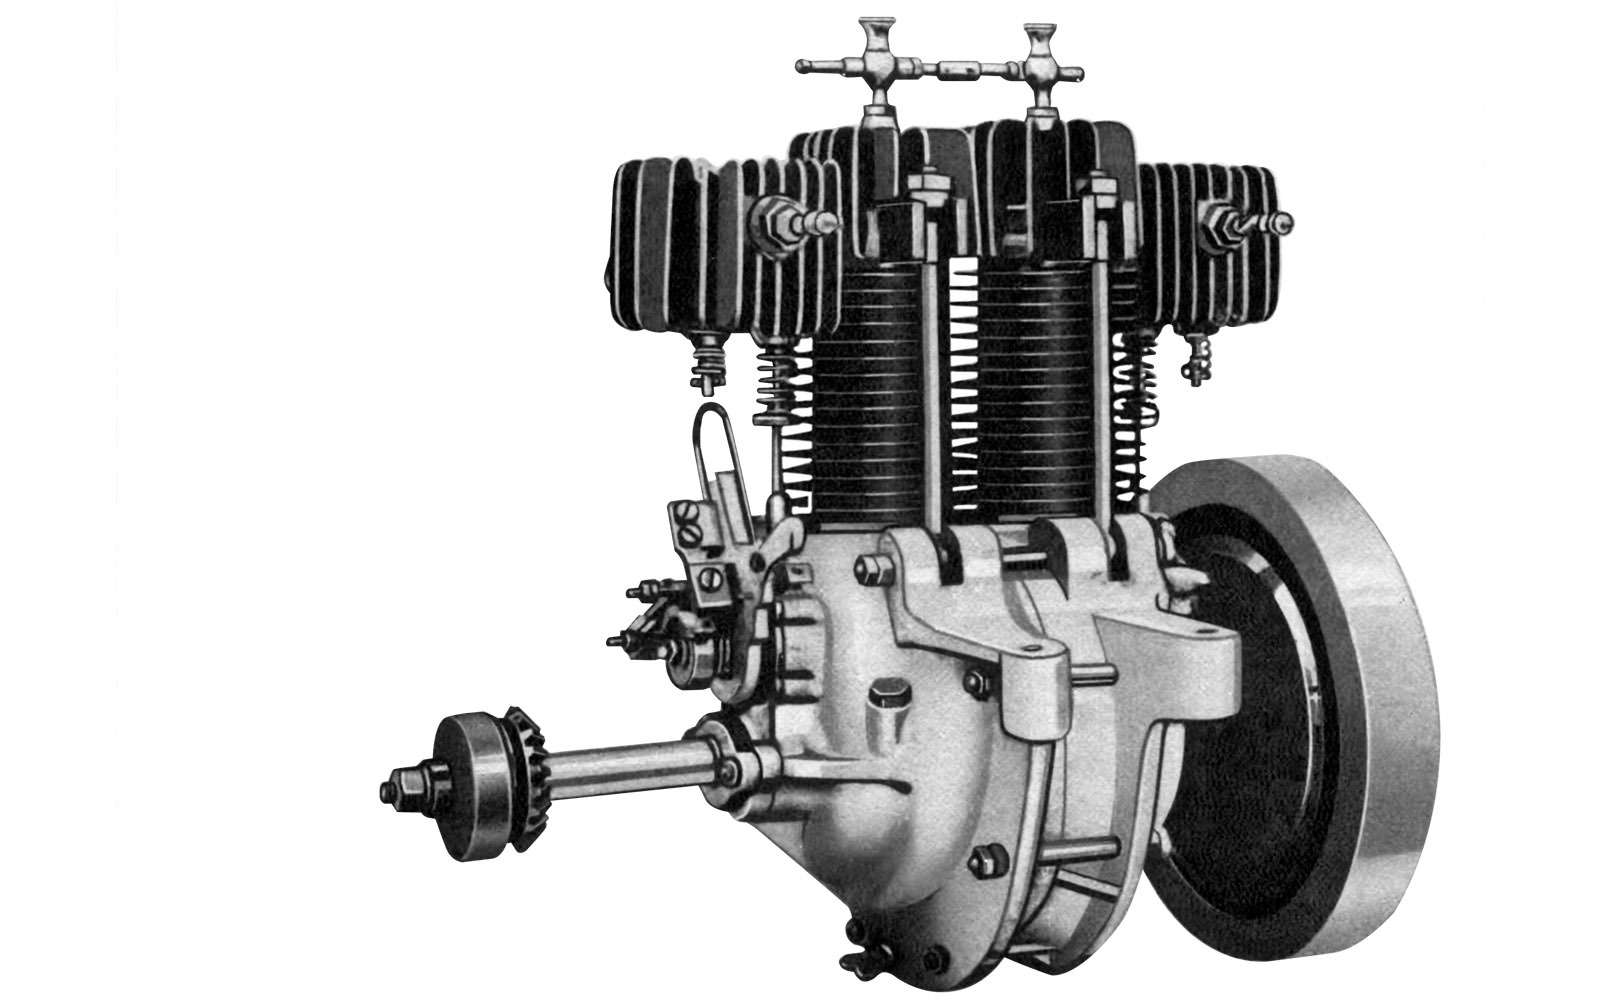 Типичный двигатель недорогого автомобиля начала ХХ века – двухцилиндровый Decauville (Дековиль) с воздушным охлаждением. Воздушники проще и дешевле моторов с жидкостным охлаждением, поэтому успешно развивались параллельно с ними.